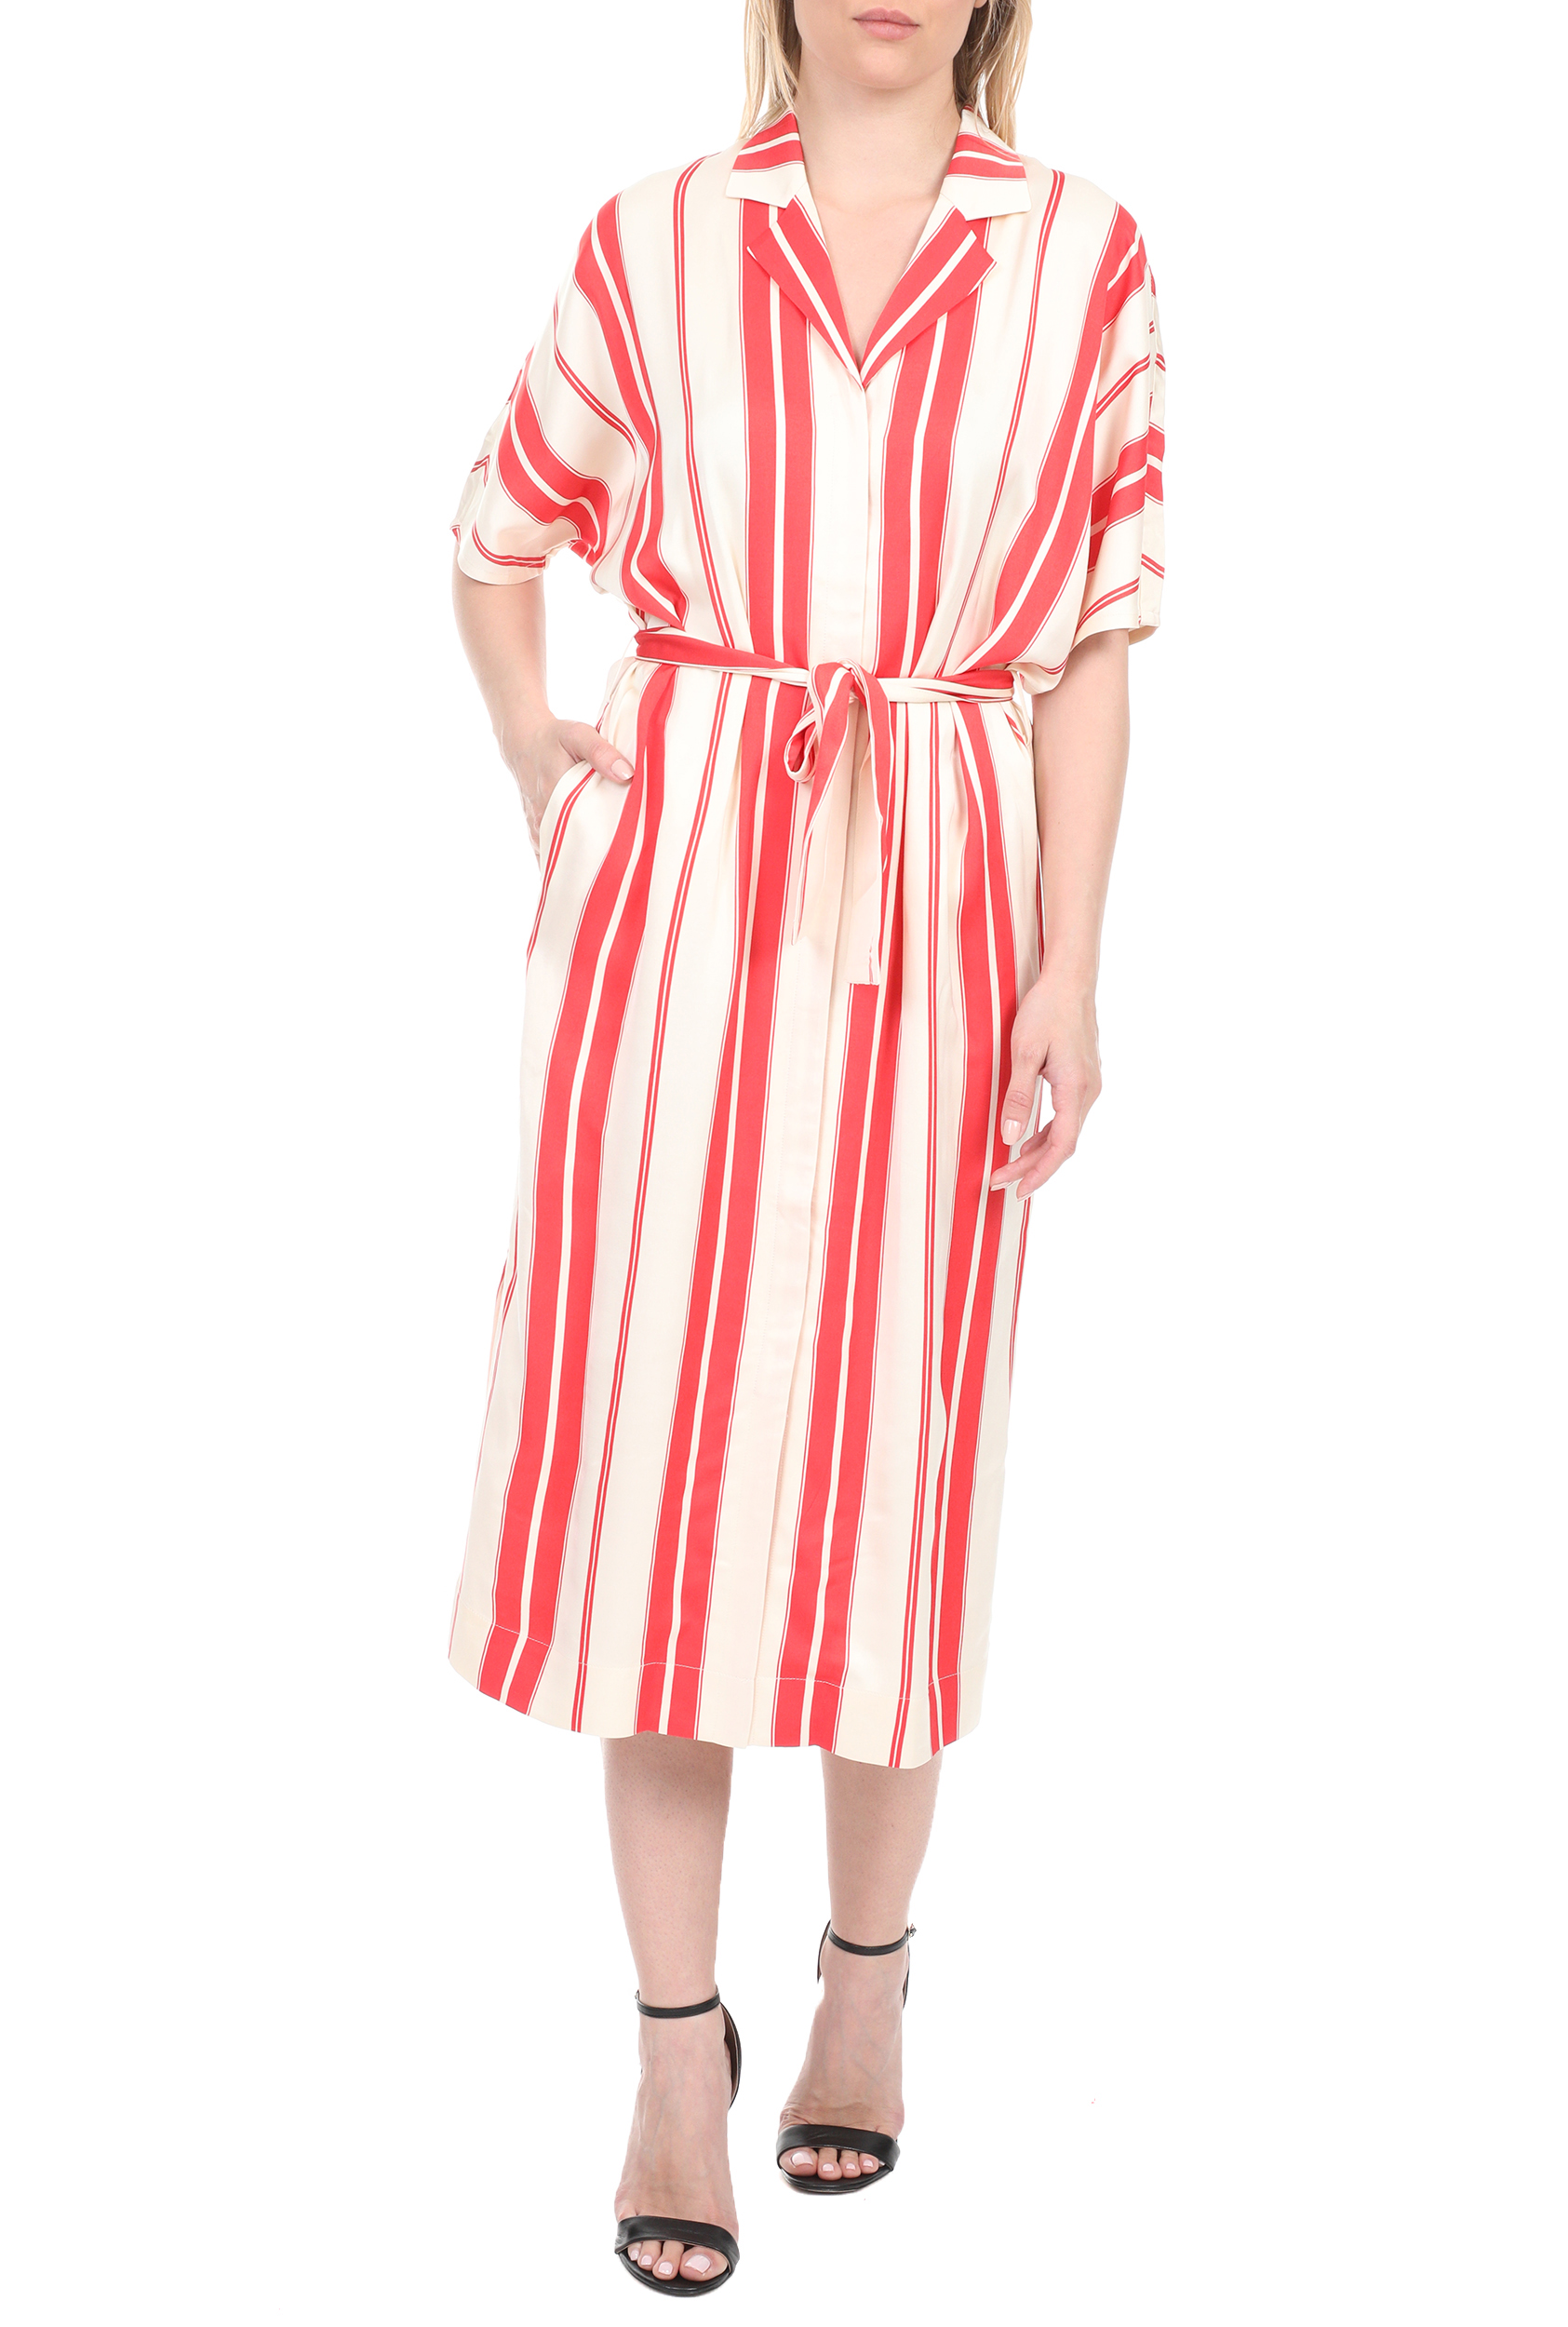 Γυναικεία/Ρούχα/Φορέματα/Μάξι SCOTCH & SODA - Γυναικείο μακρύ φόρεμα SCOTCH & SODA λευκό κόκκινο